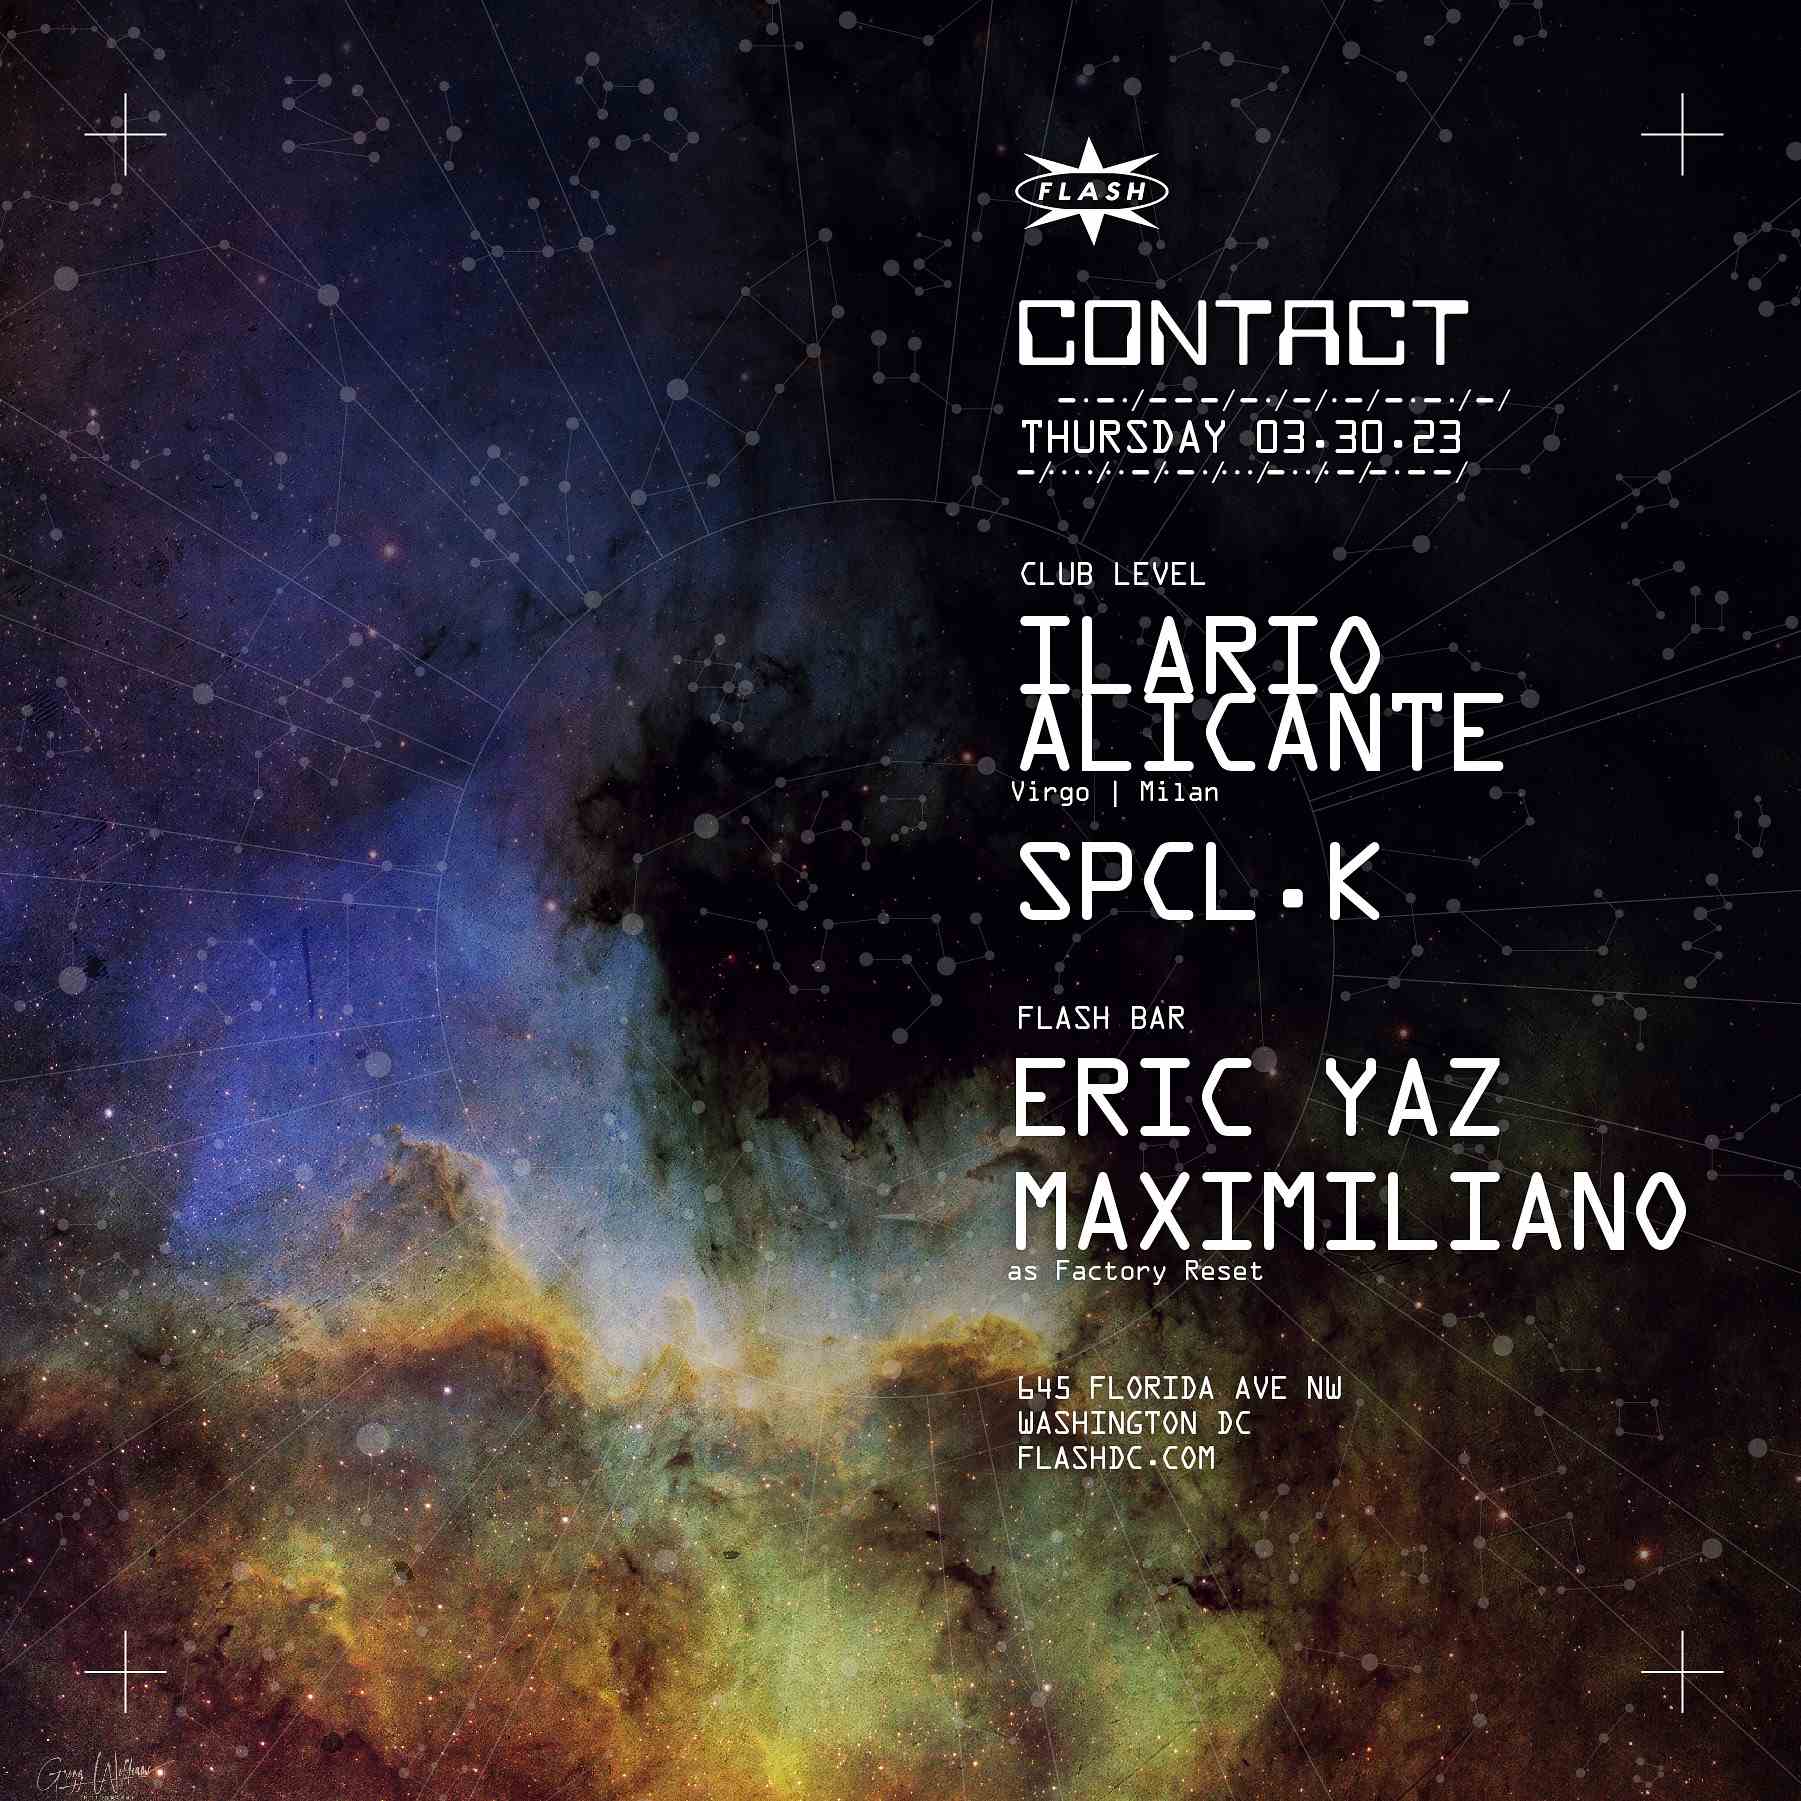 Event image for CONTACT: Ilario Alicante